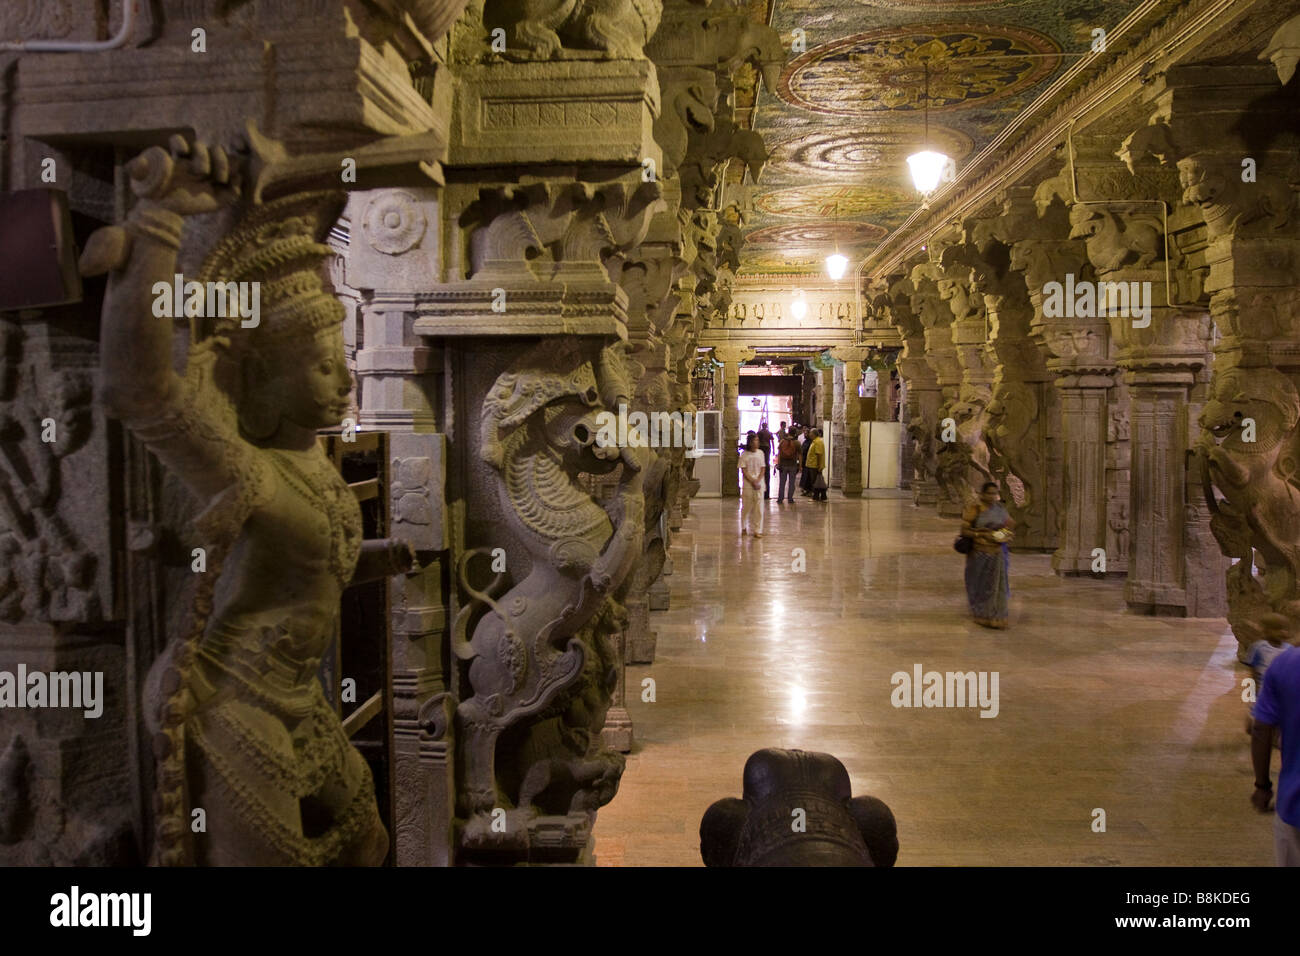 India Tamil Nadu Madurai Sri Meenakshi Temple Ayriakkal Mandapa the thousand pillared hall Stock Photo